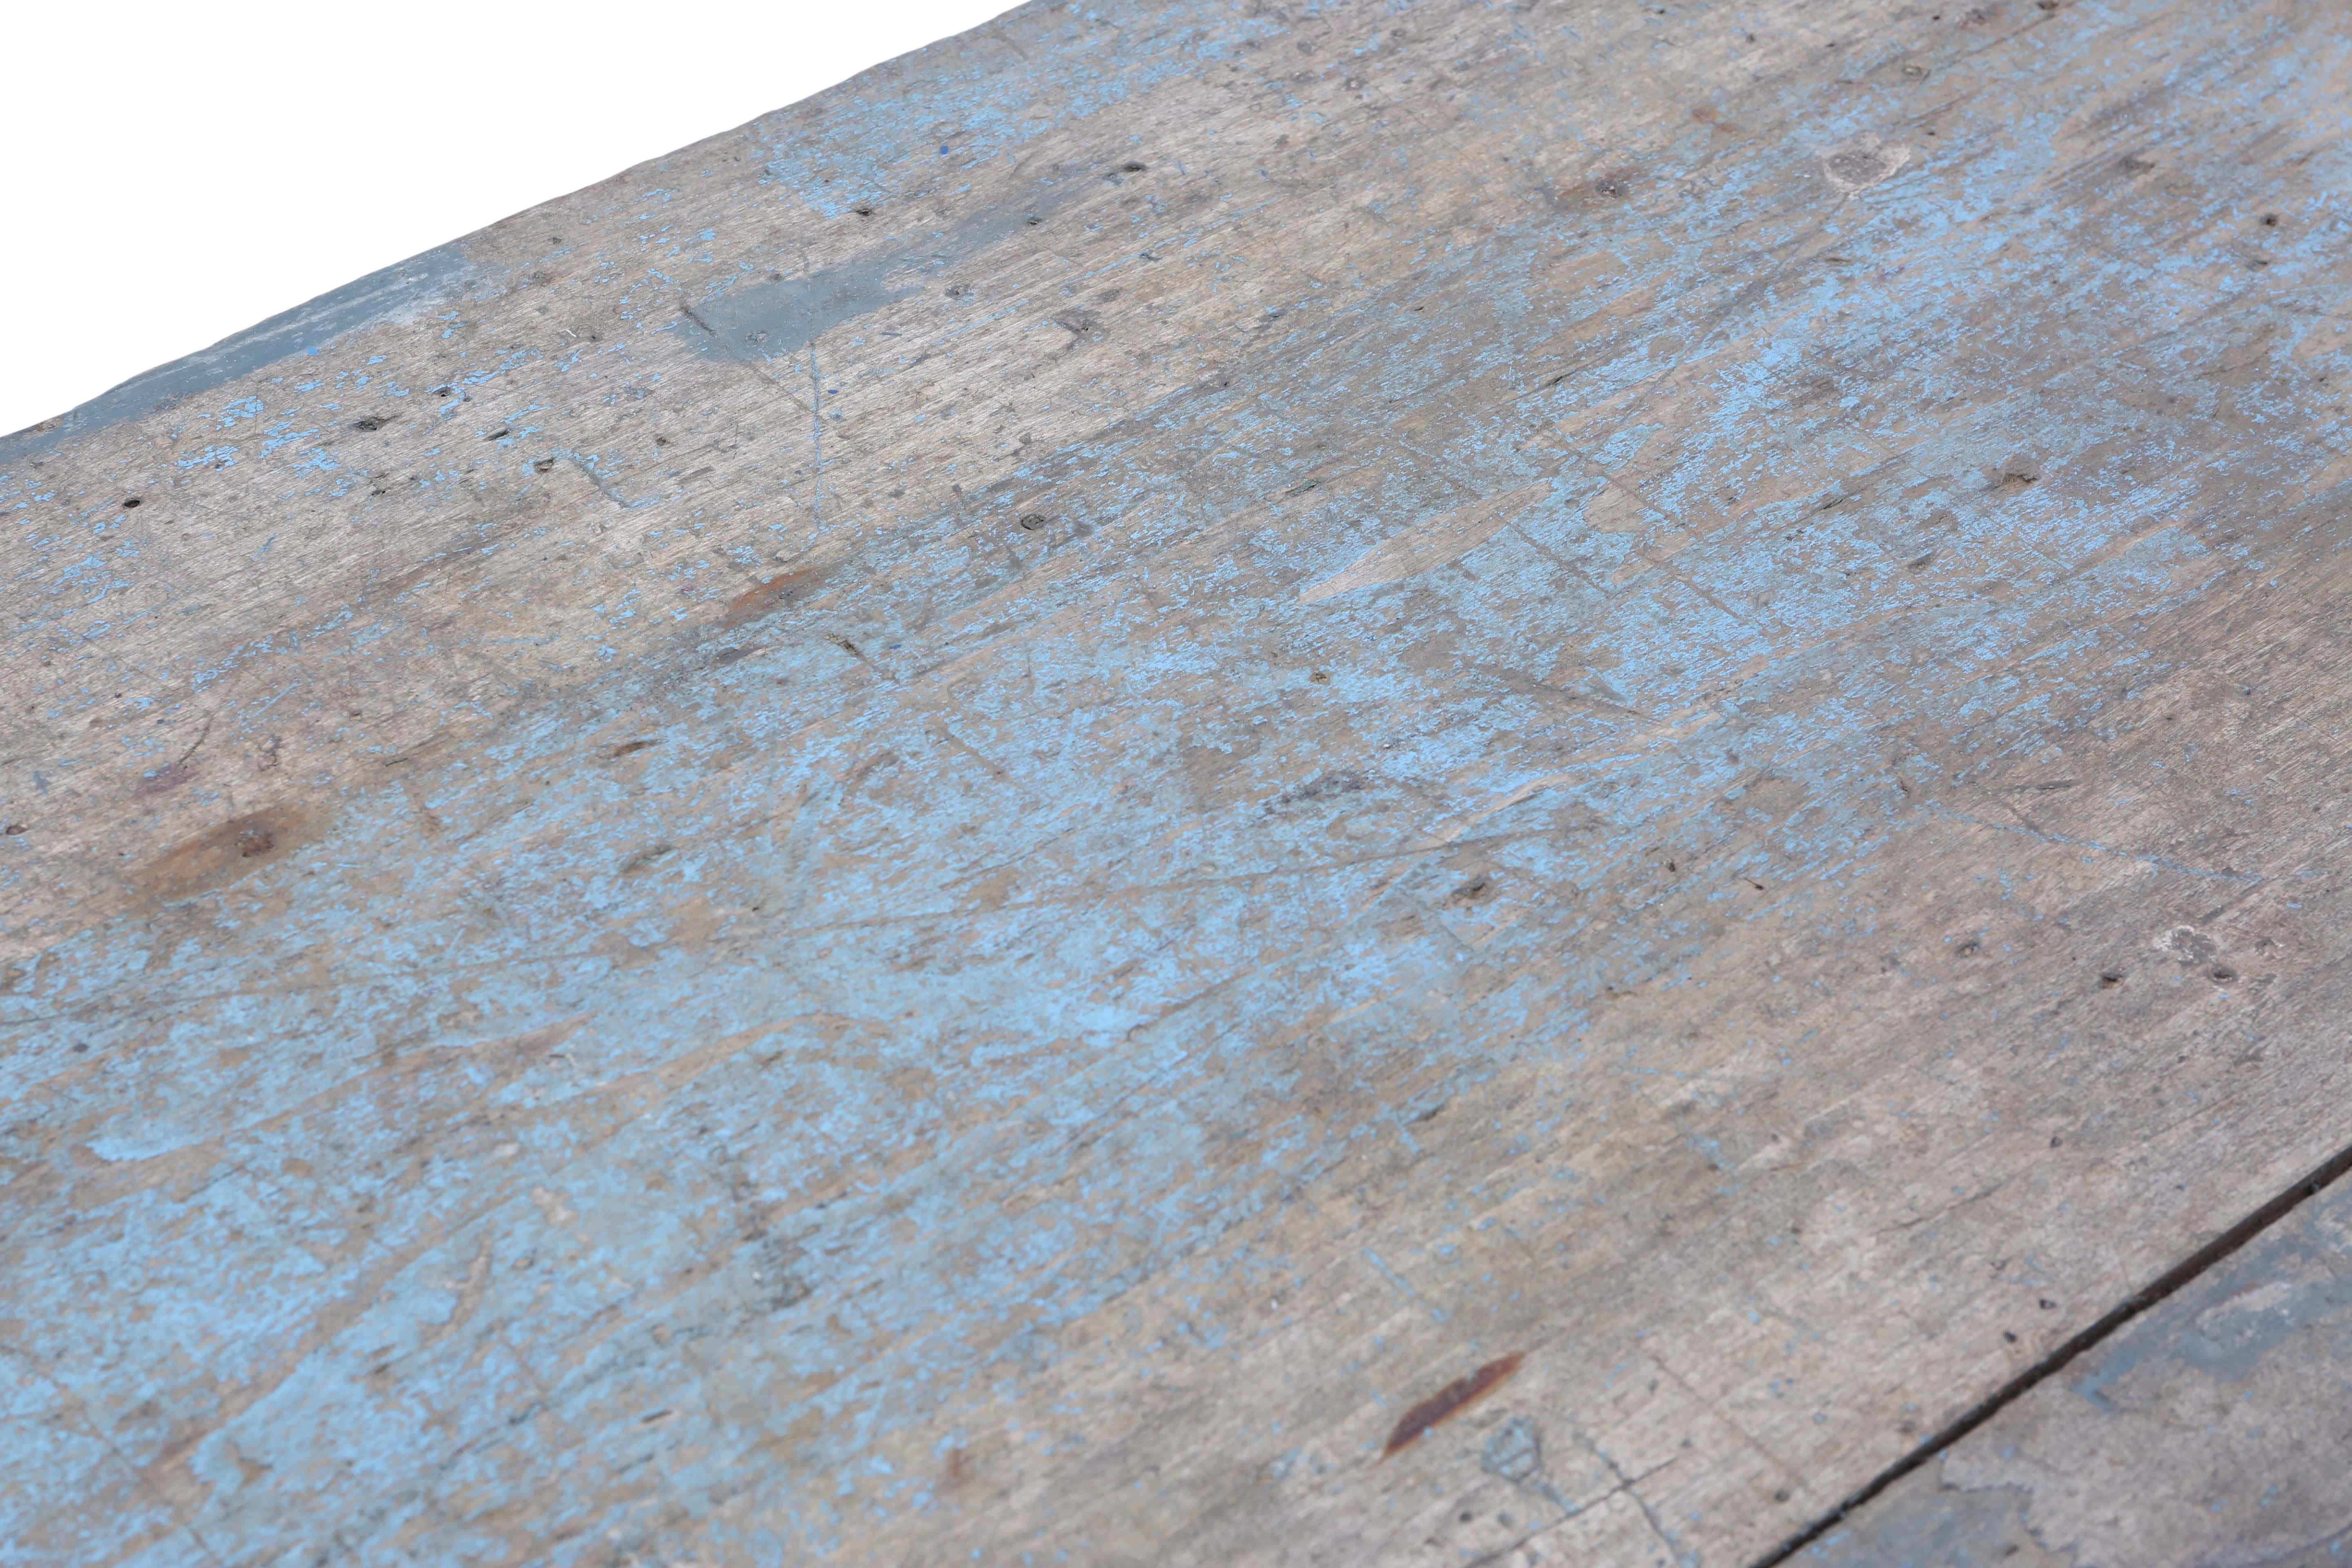 Ancienne table de réfectoire 7' en bois tendre peint C1900.

La finition de la peinture est belle et usée/déformée.

Solide, lourd et résistant, sans joints lâches ni vermine.

Dimensions maximales hors tout :

217cmL x 80cmW x 75cmH.

En bon état